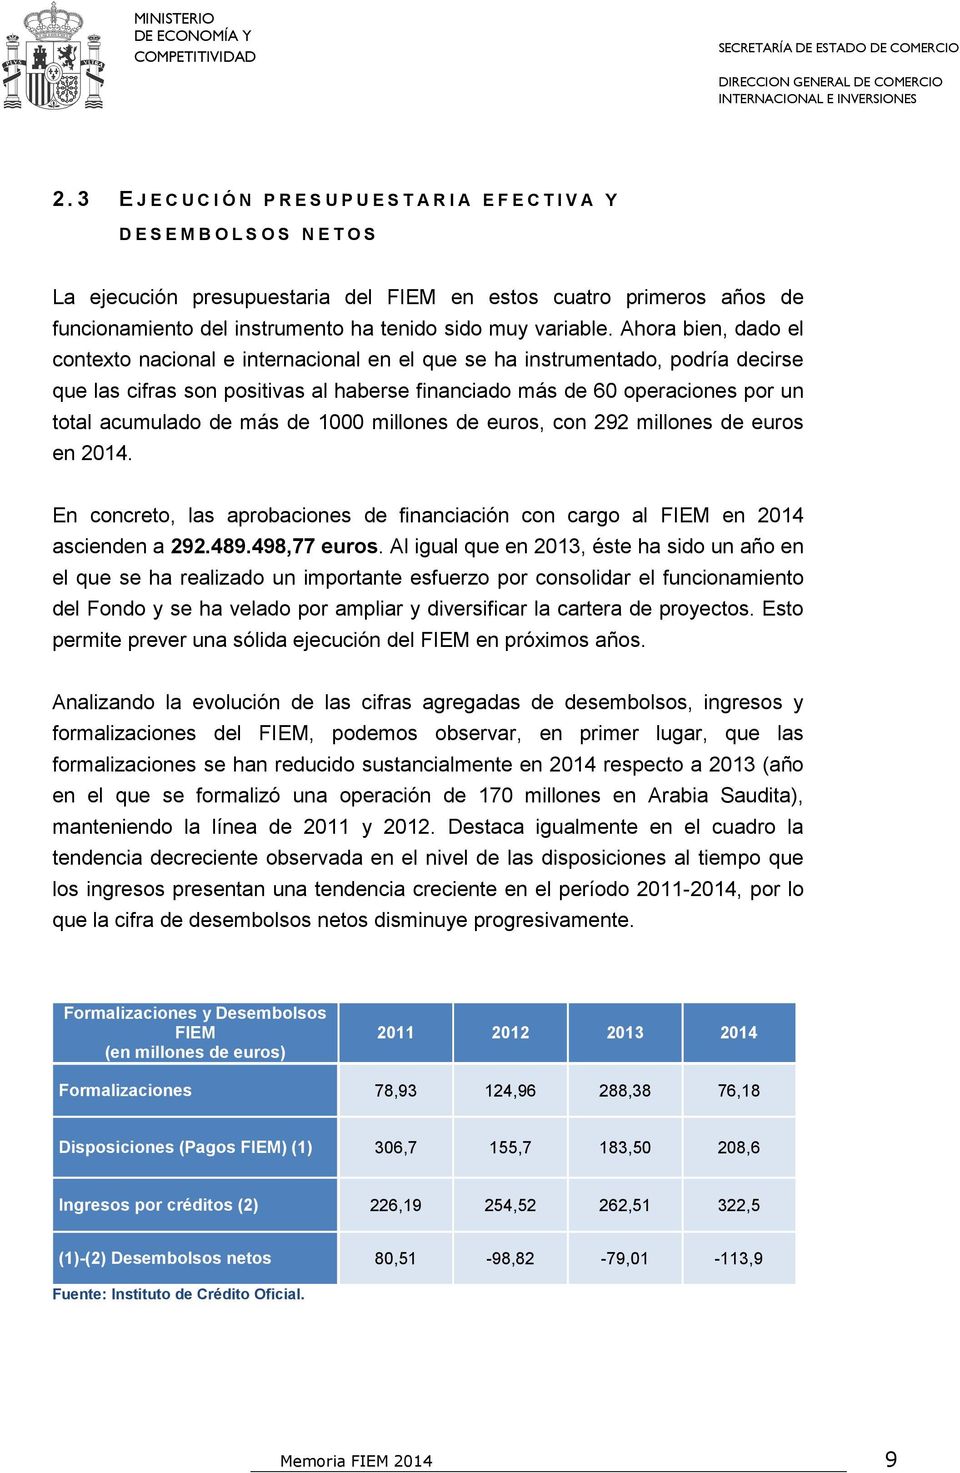 más de 1000 millones de euros, con 292 millones de euros en 2014. En concreto, las aprobaciones de financiación con cargo al FIEM en 2014 ascienden a 292.489.498,77 euros.